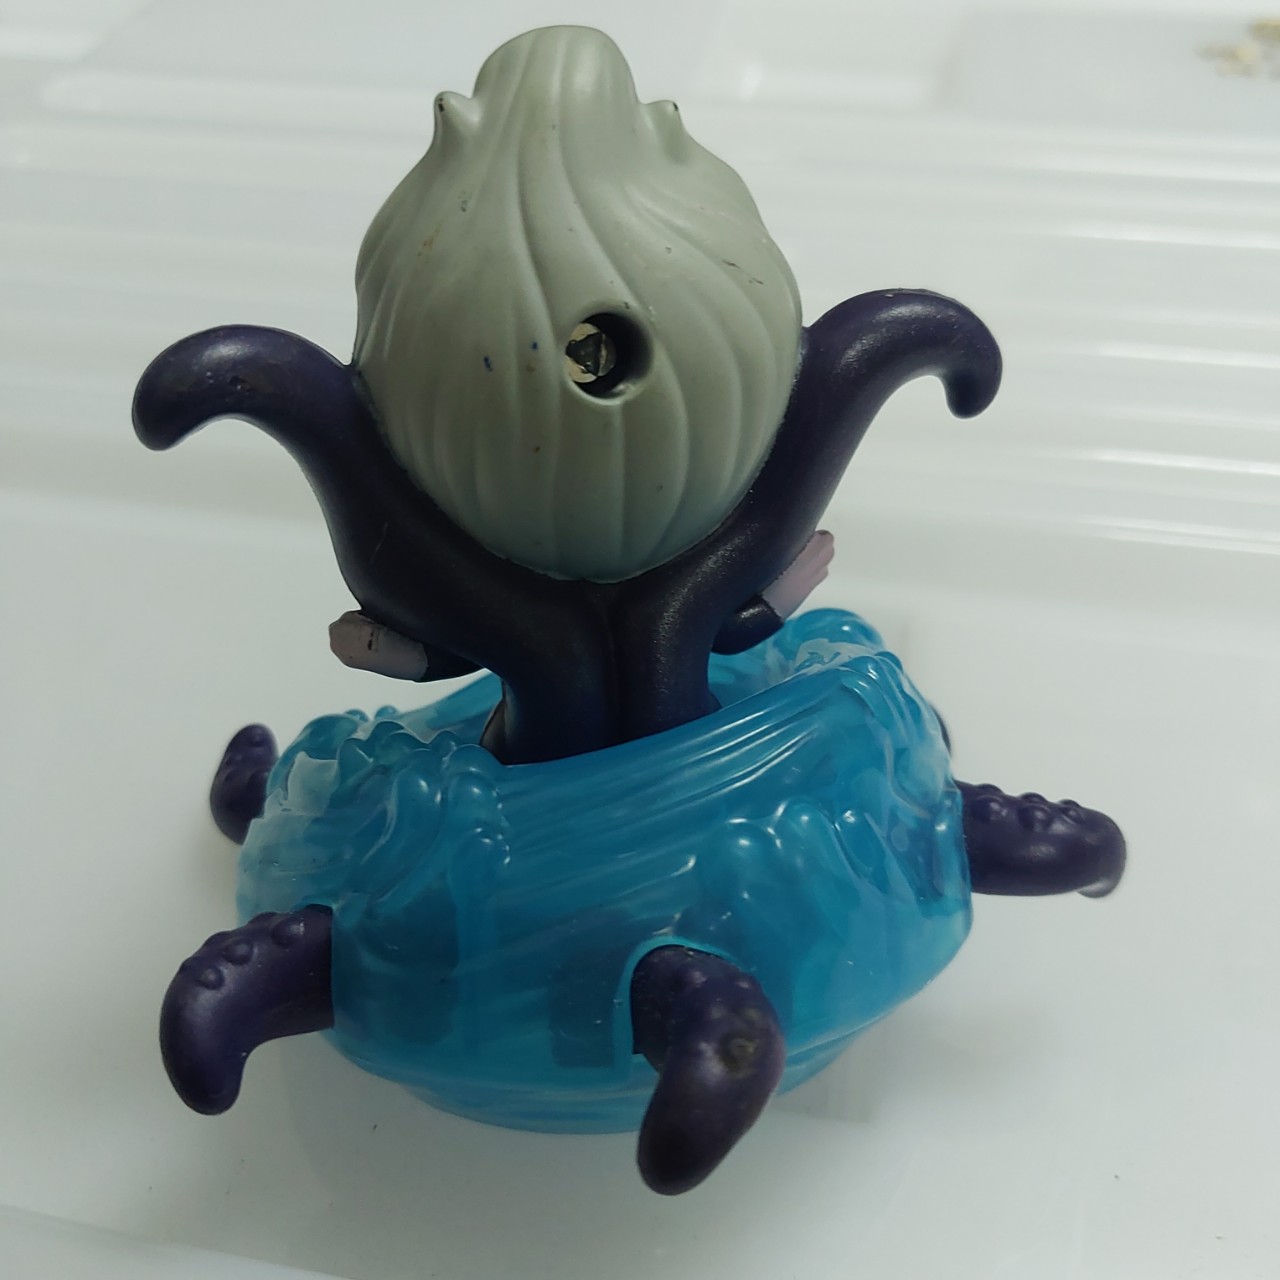 [Chinh hang]Mô hình nữ bạch tuộc Ursula trong nàng tiên cá McDonalds Happy Meal Toys Disneys The Little Mermaid 2115 3